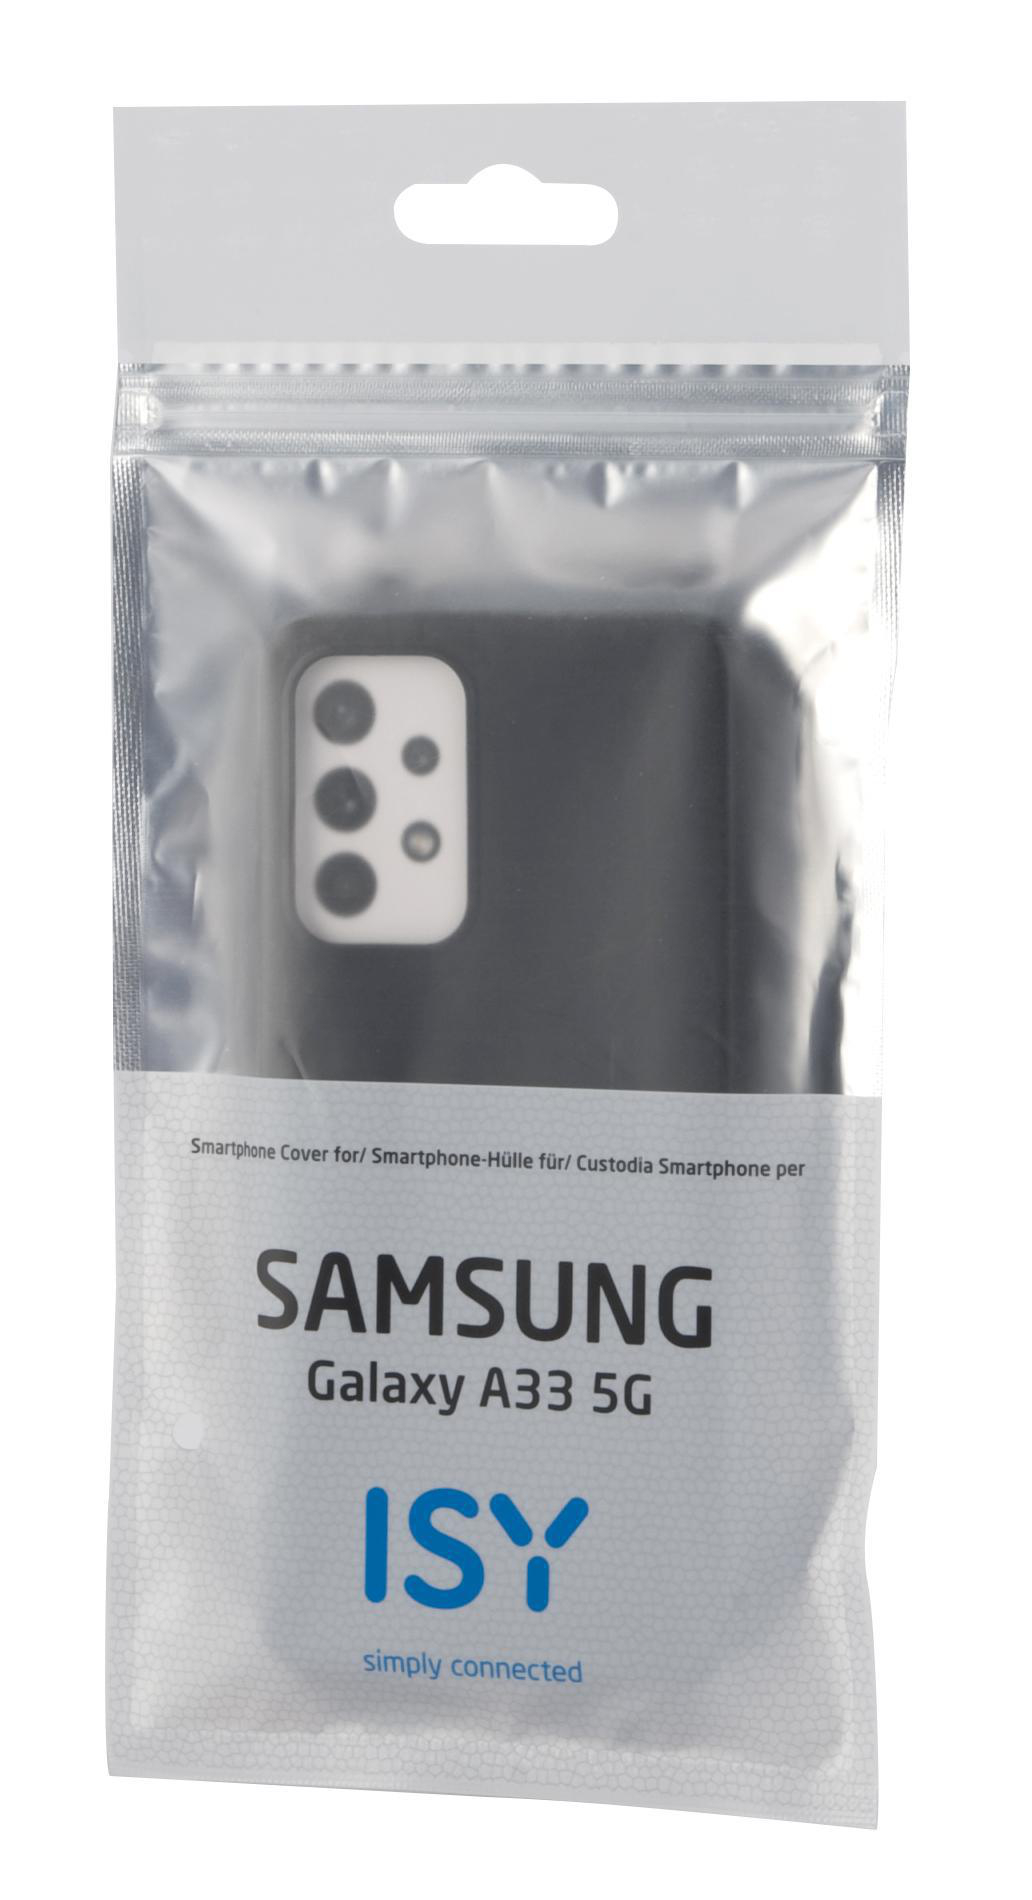 Backcover, ISY Samsung, 5G, A33 ISC-5107, Schwarz Galaxy